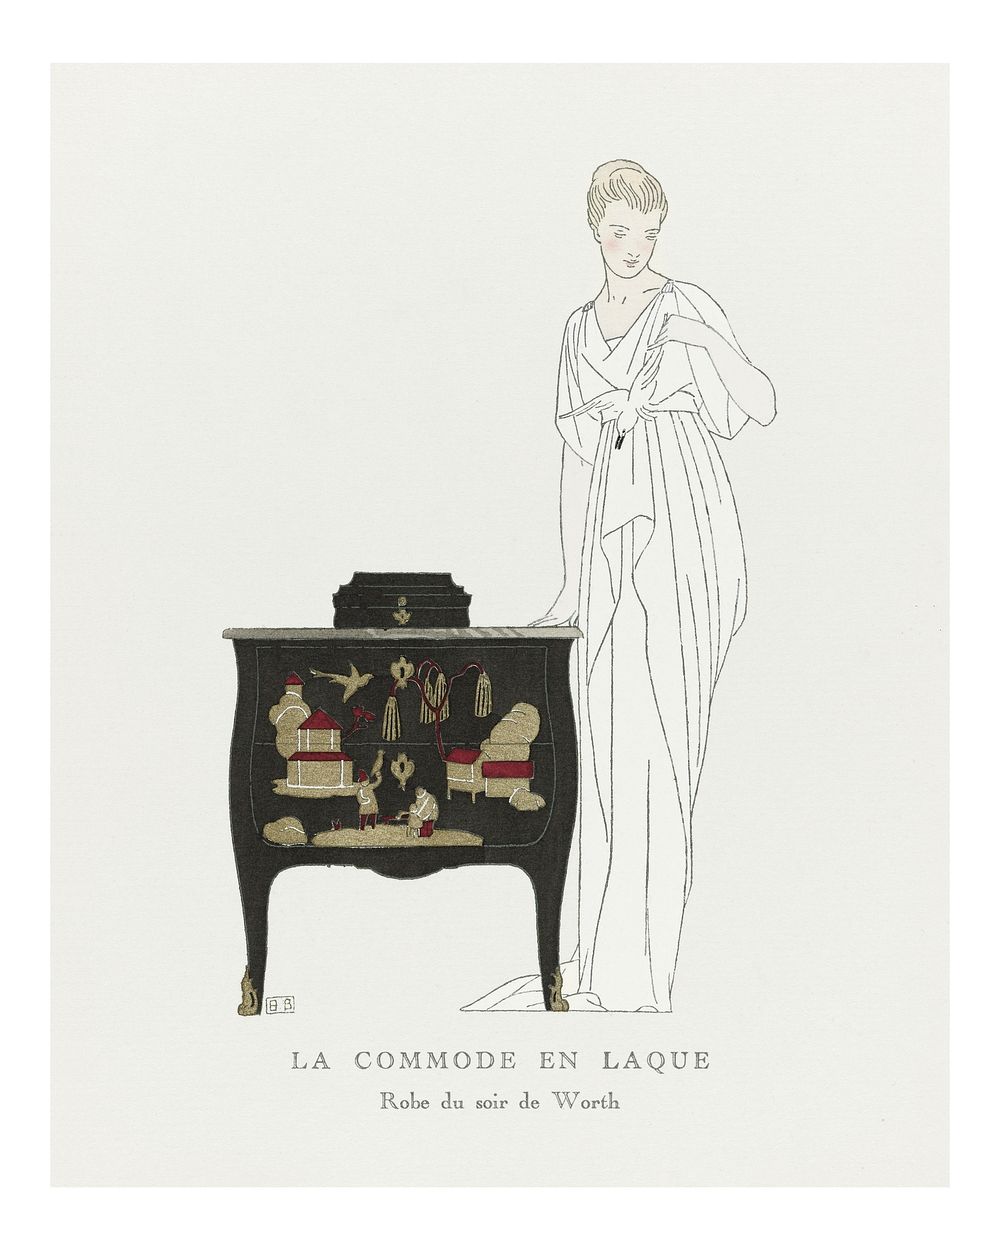 Vintage woman fashion poster, Art Nouveau remix from the artwork of Bernard Boutet de Monvel